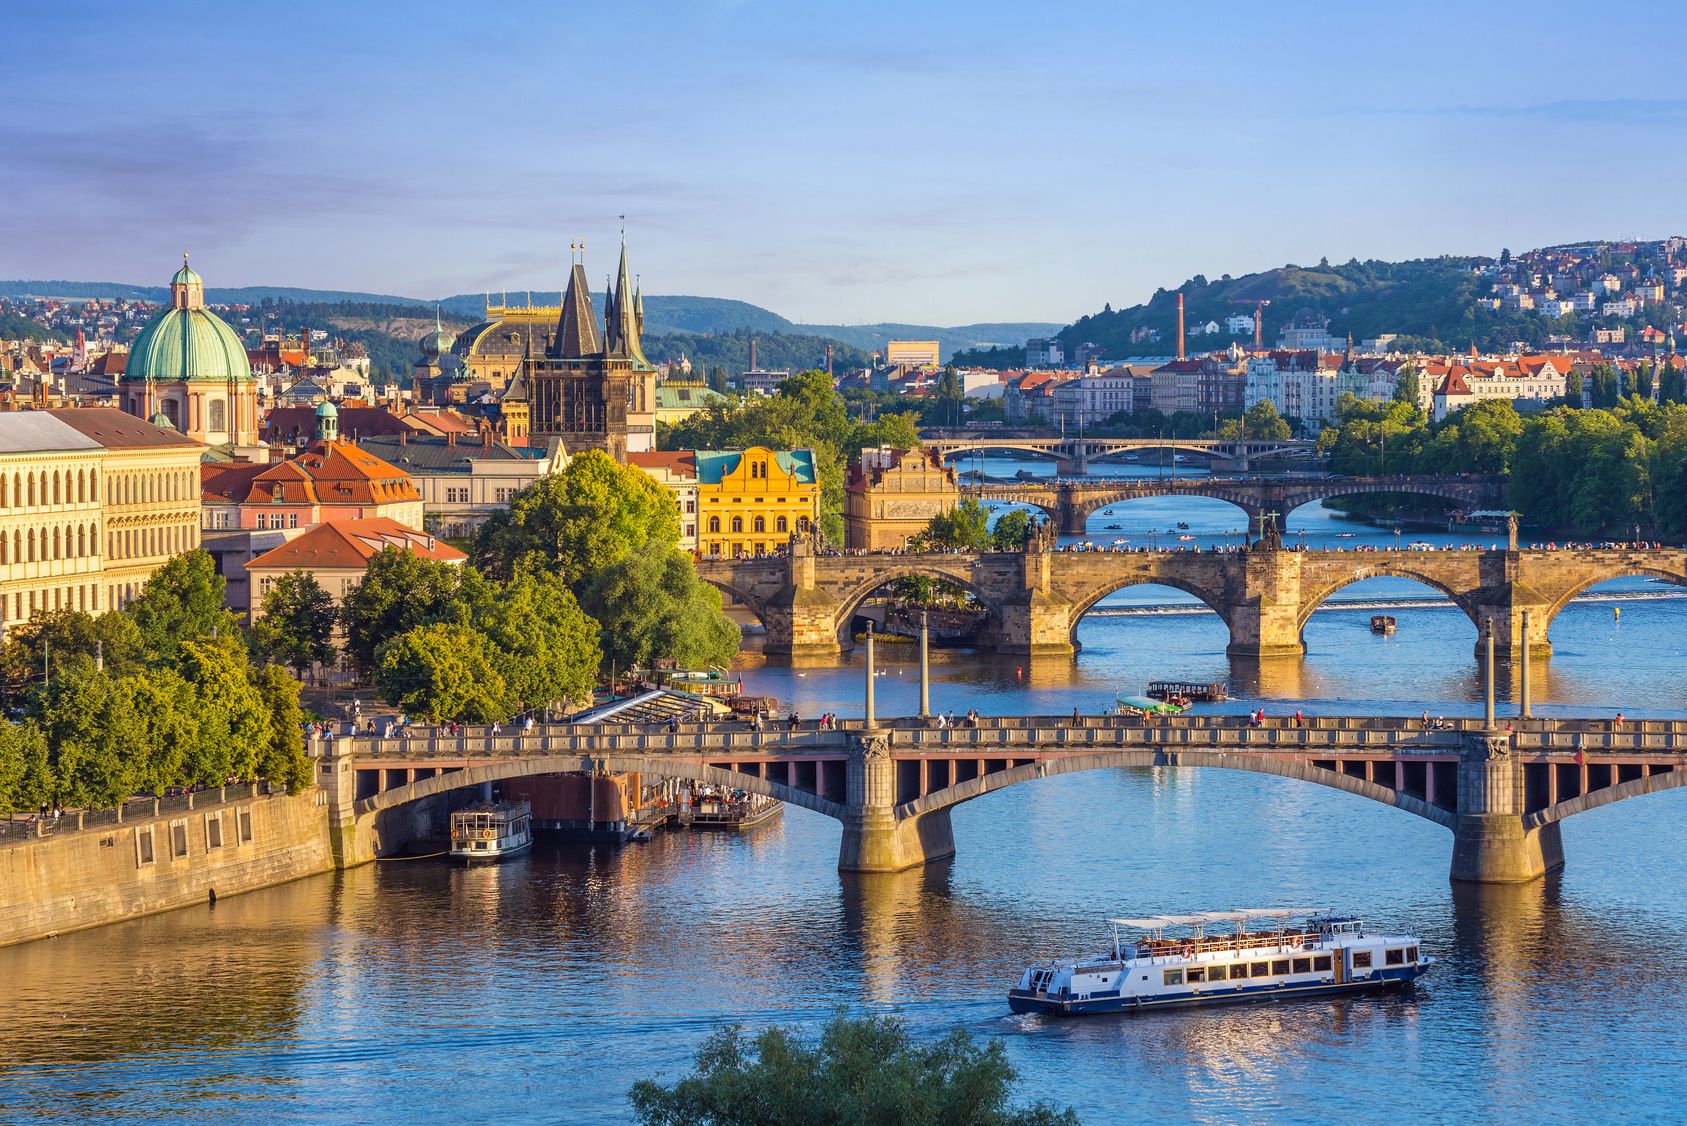 Prag - Die Goldene Stadt